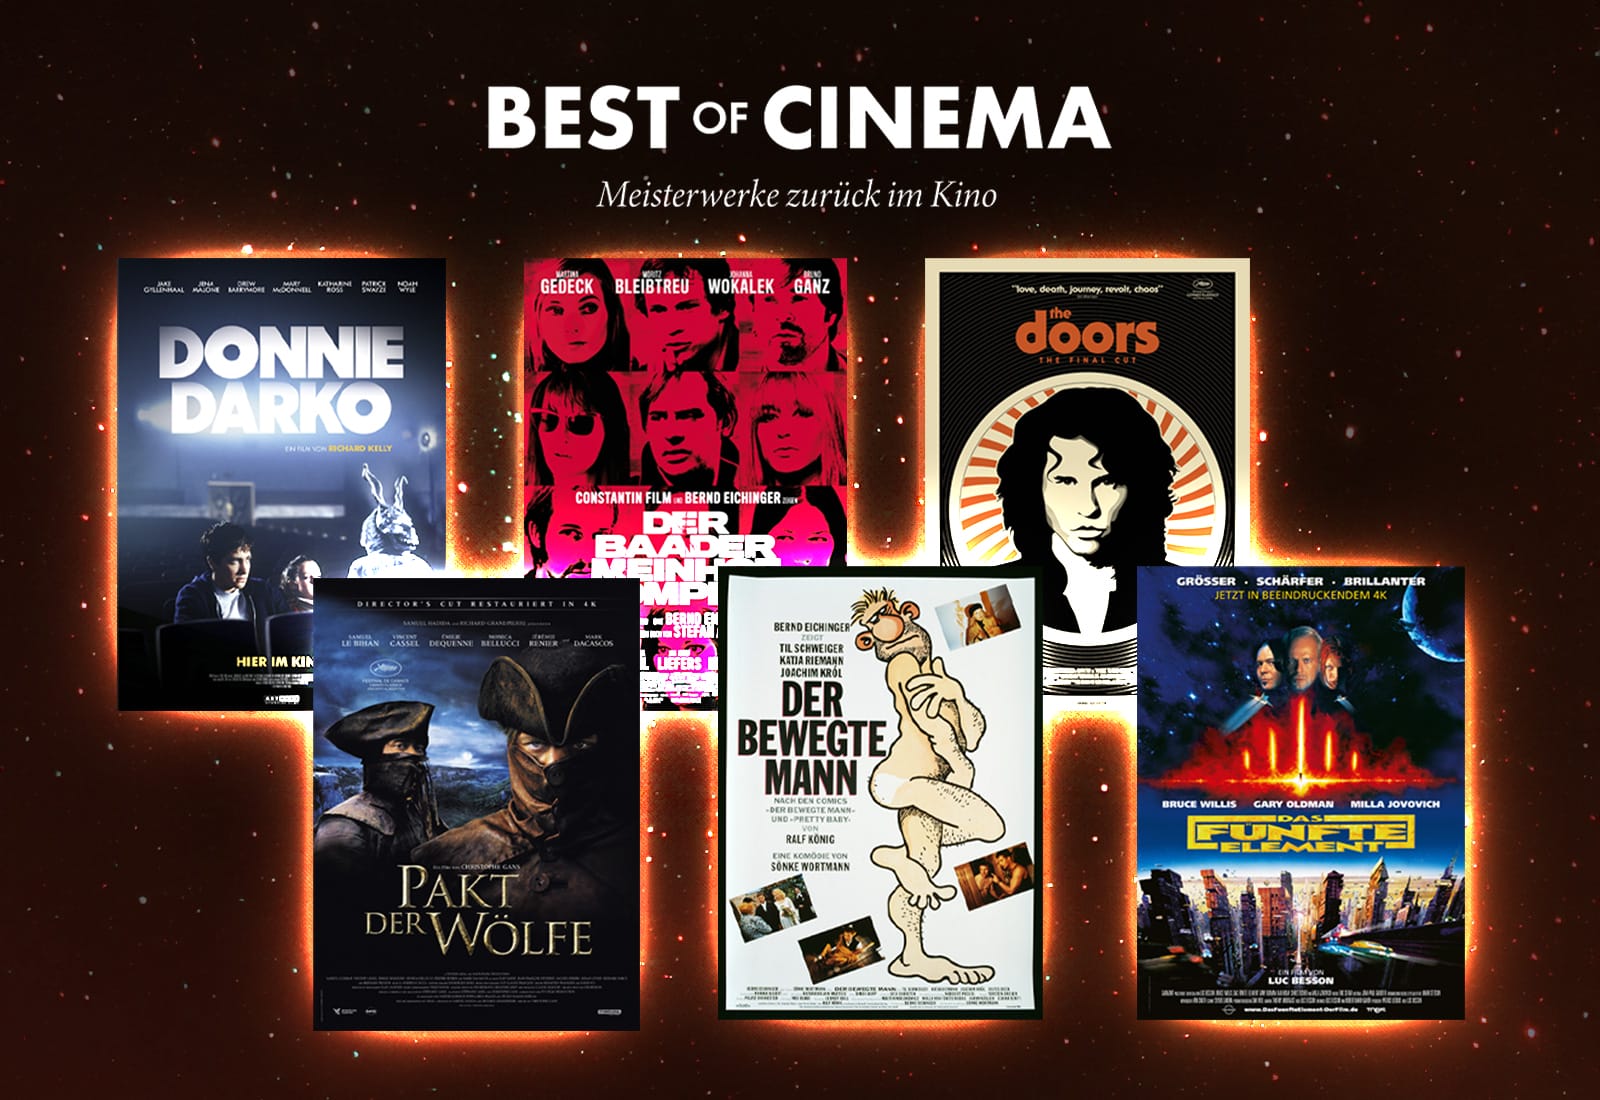 Best of Cinema - BEST OF CINEMA - eine monatliche Kinoreihe für  Filmliebhaber!